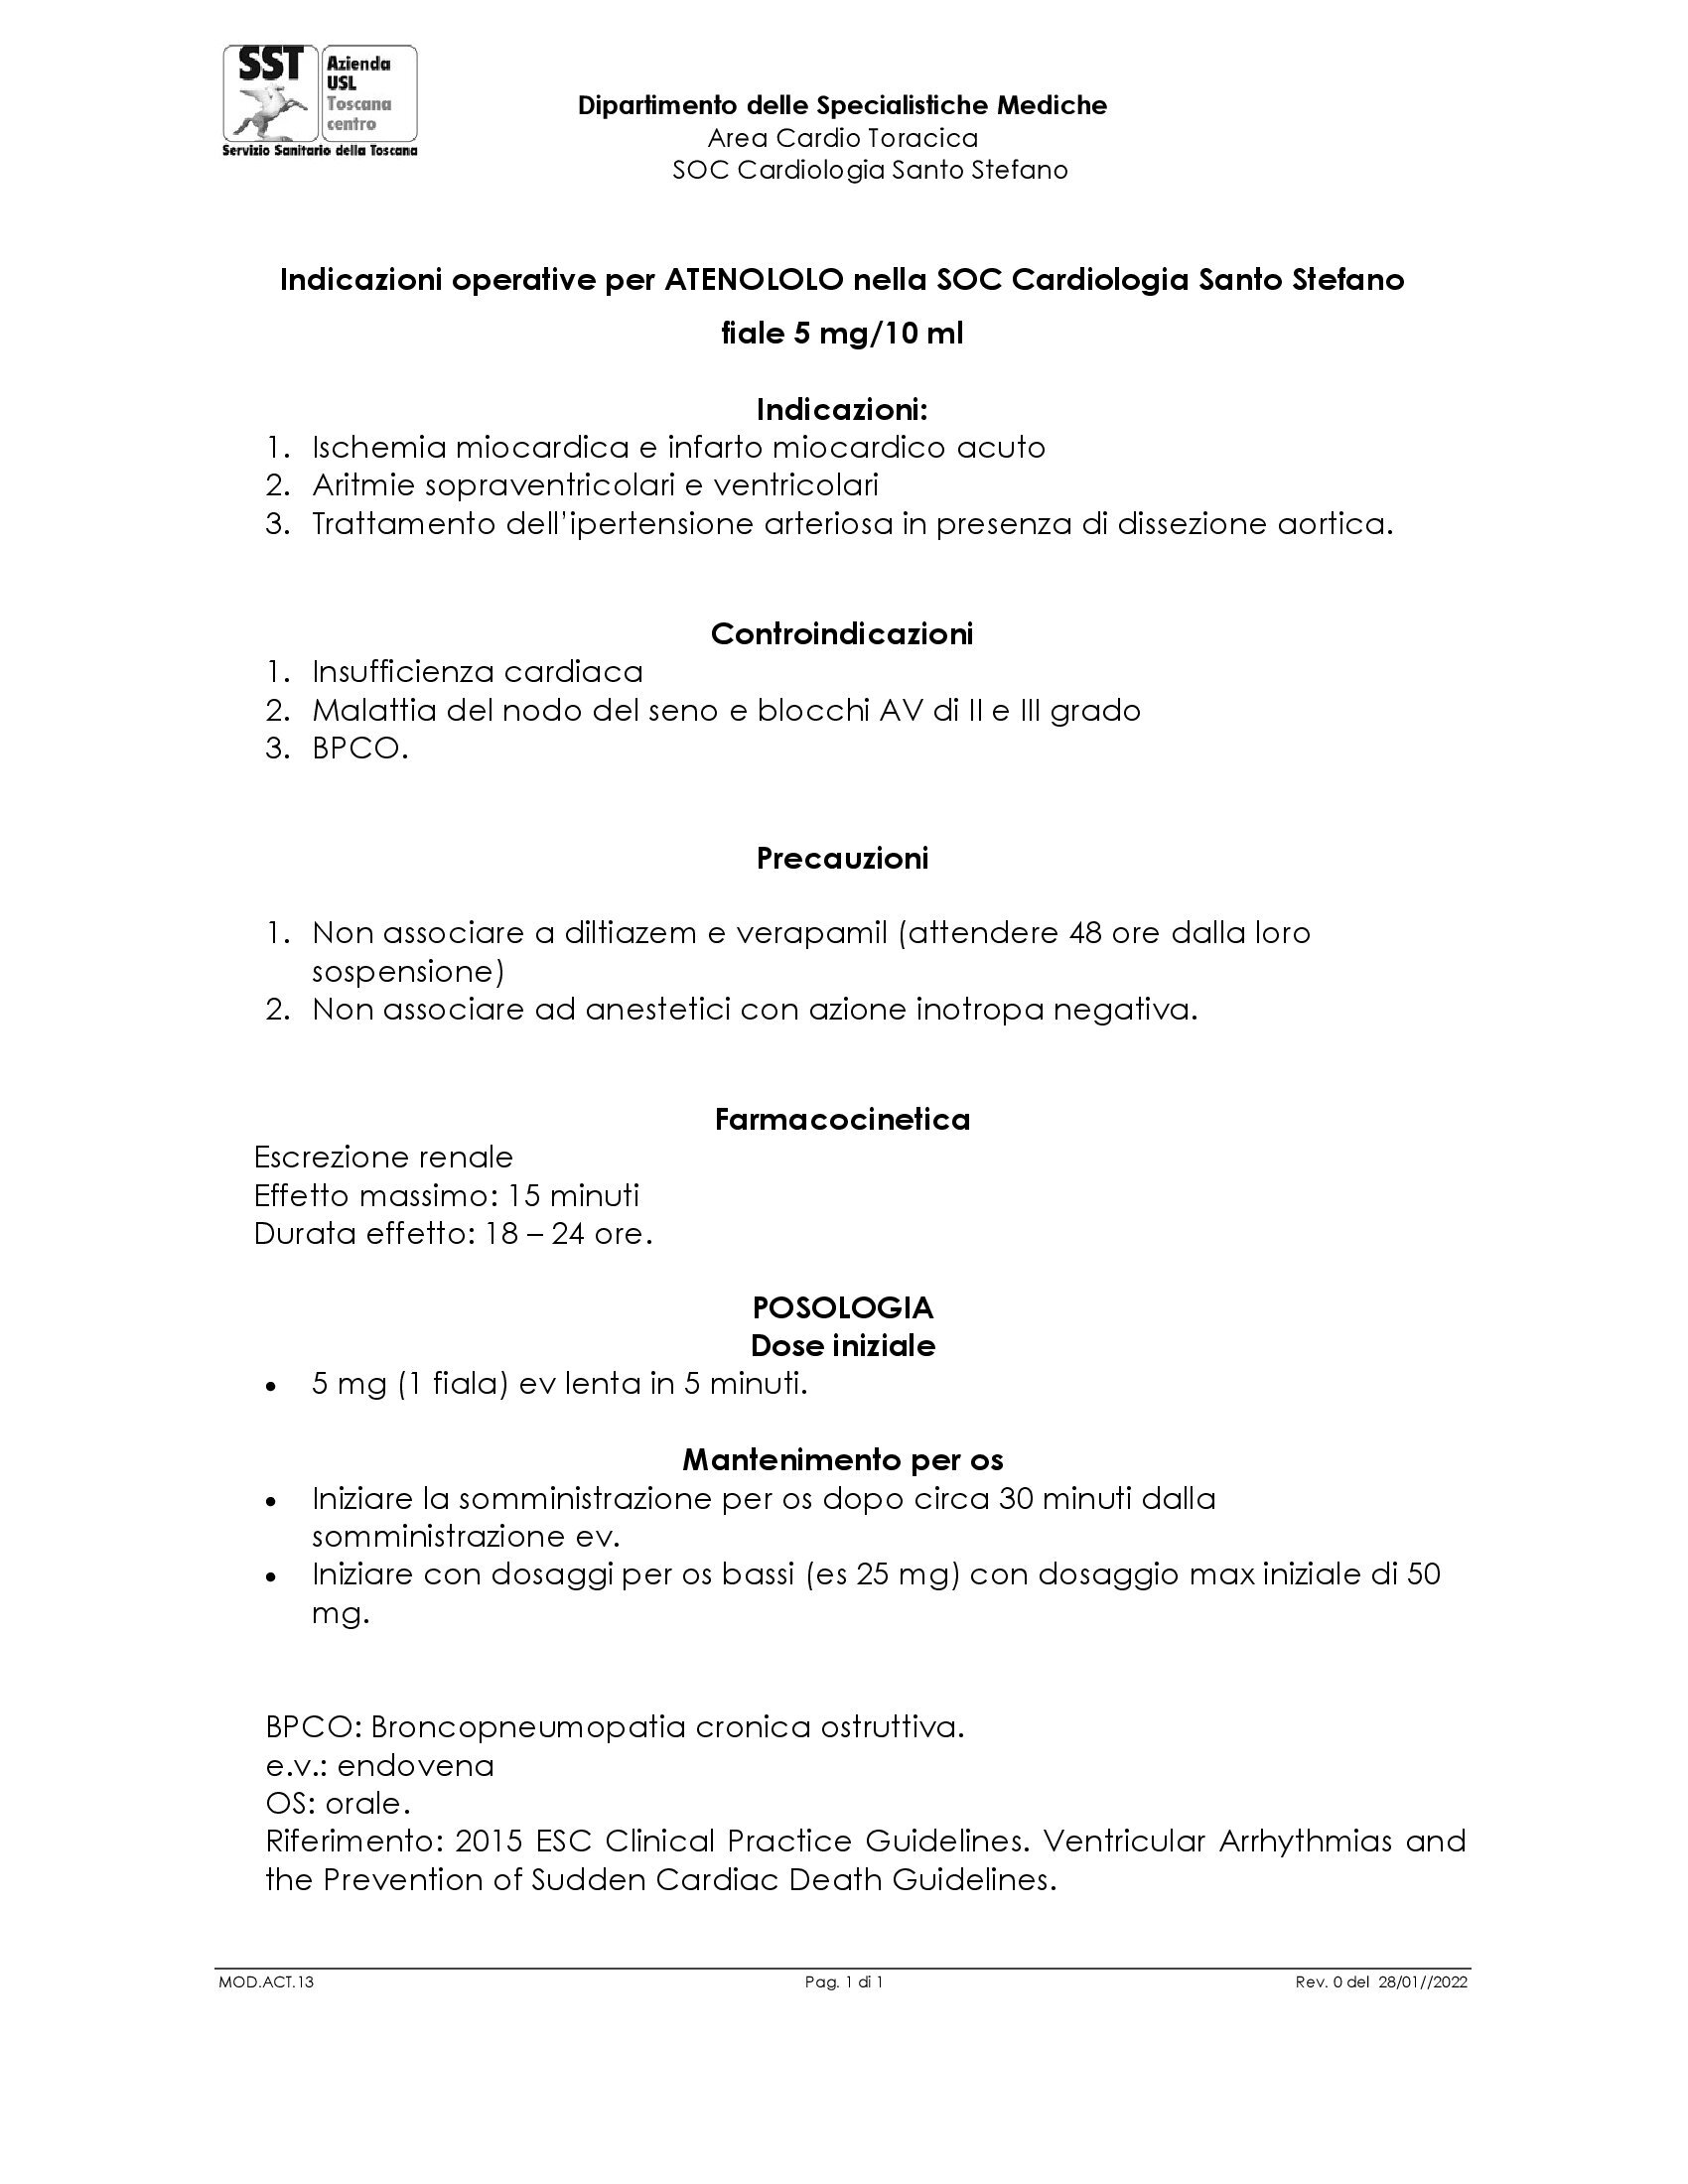 MOD.ACT.13 Indicazioni operative per ATENOLOLO nella SOC Cardiologia Santo Stefano